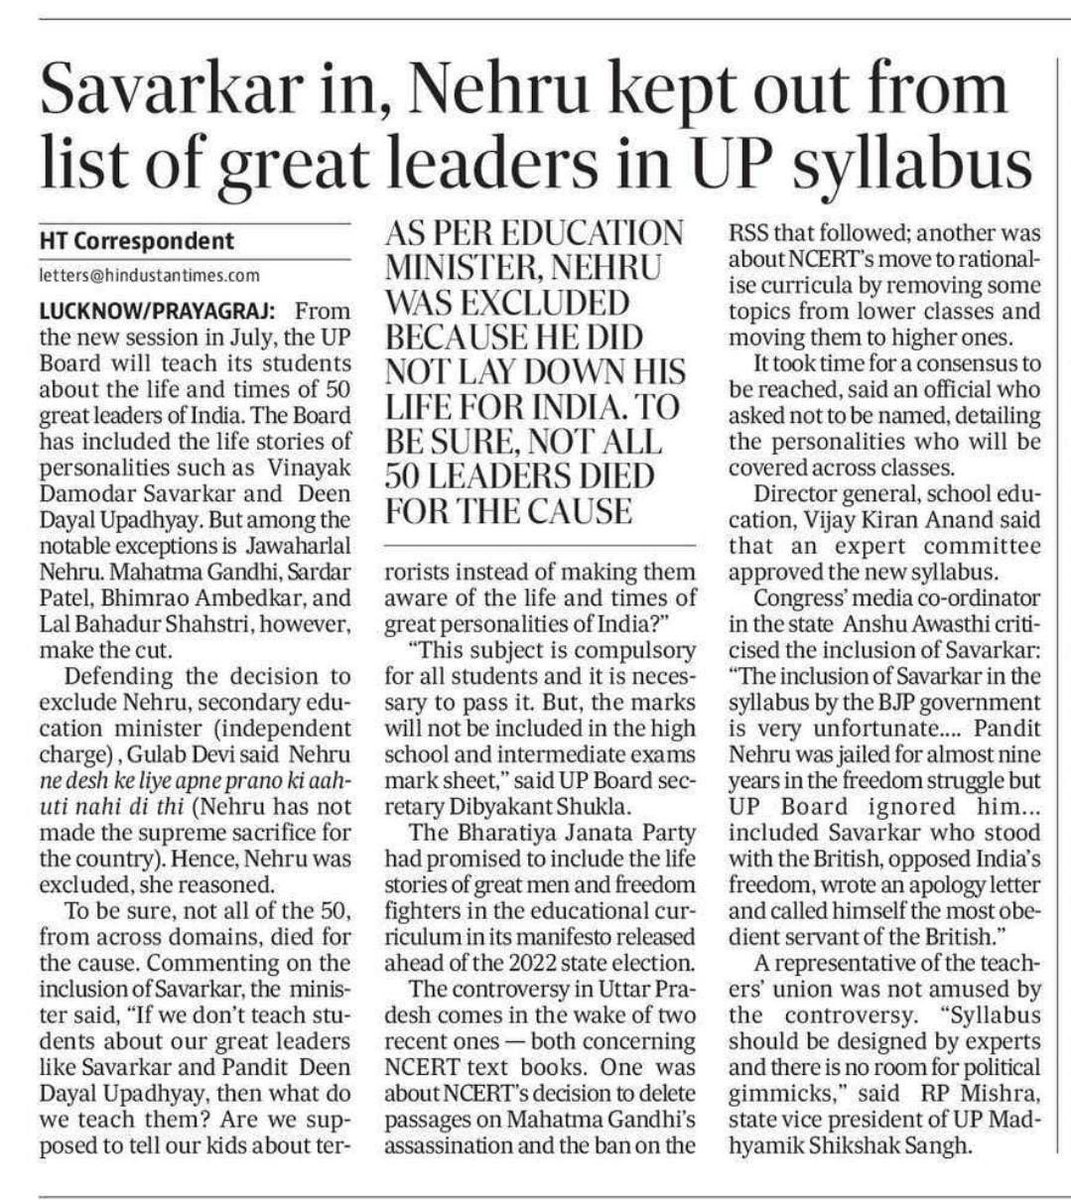 Savarkar in , Nehru kept ou of list of great leaders in UP.

Shame.